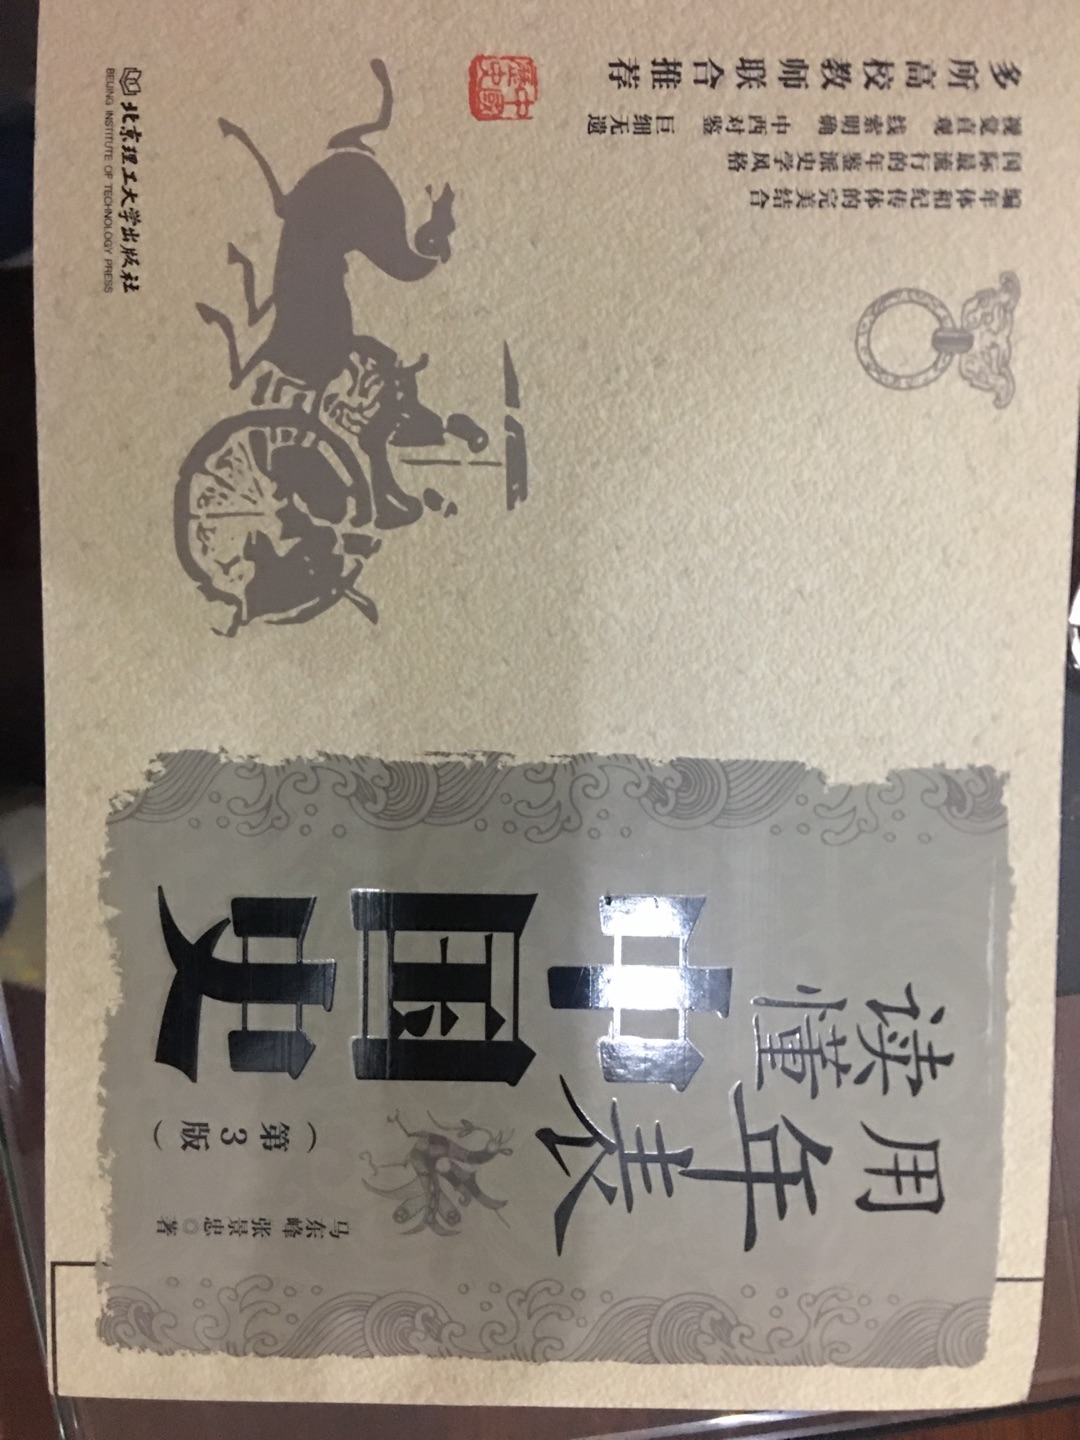 印刷精美，这本书用年表来读中国史，脉络清晰，读起来轻松。